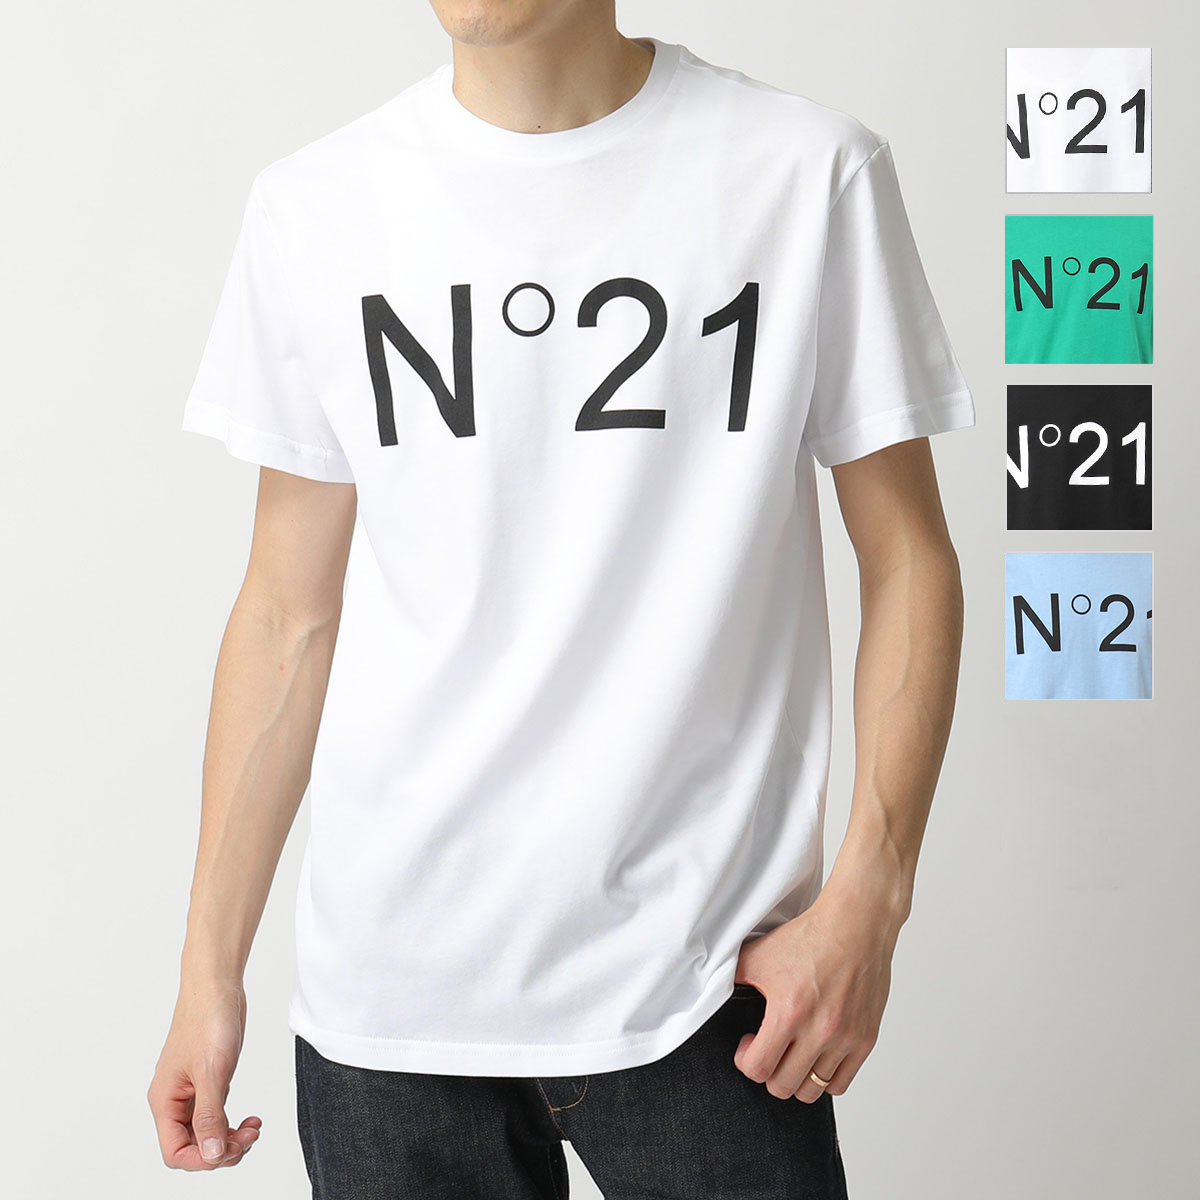 N°21 ヌメロ ヴェントゥーノ F021 6332 6317 カラー4色 半袖 Tシャツ クルーネック カットソー ロゴT メンズ |  インポートセレクト musee